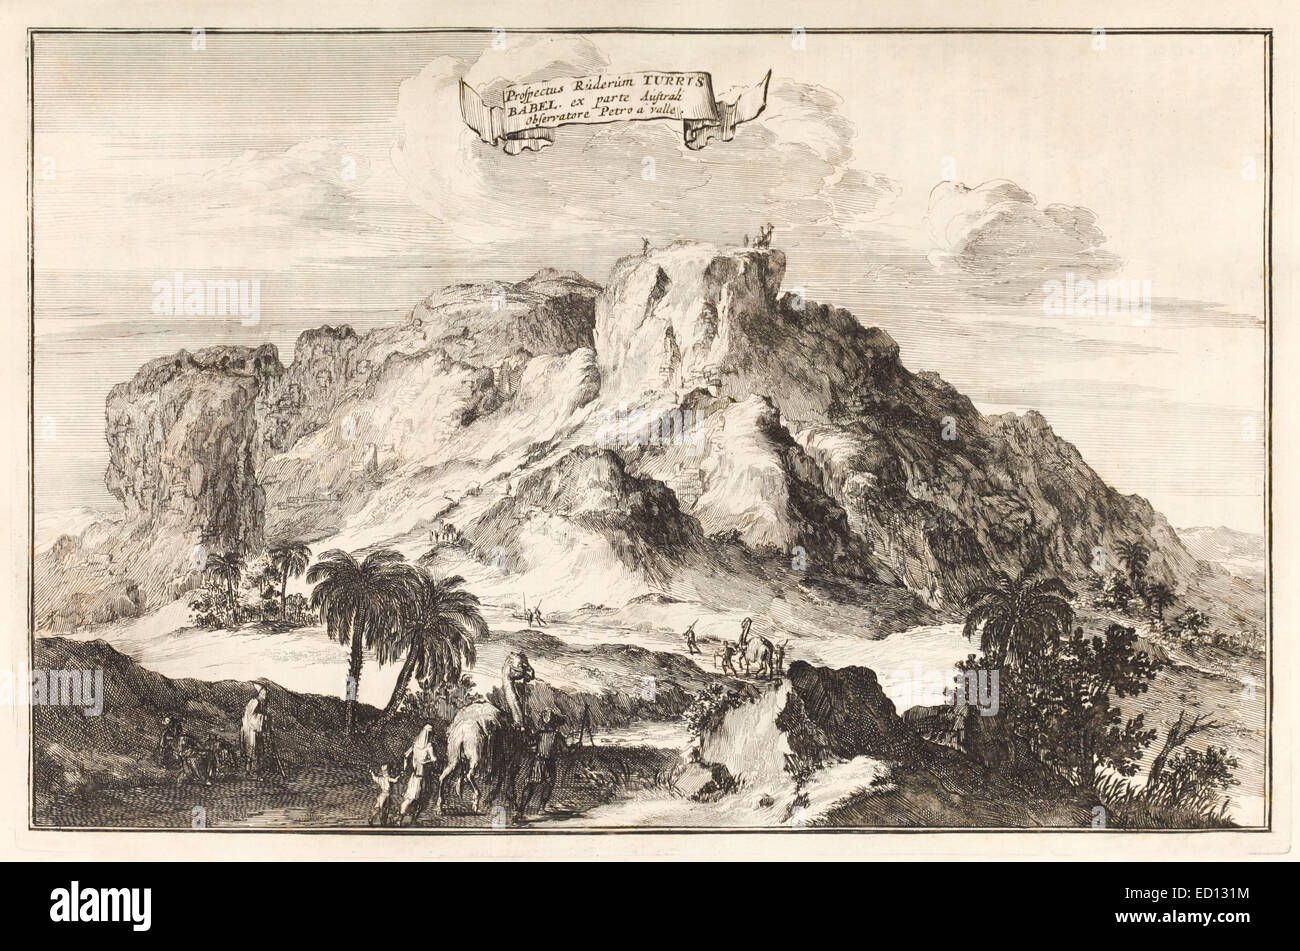 17ème siècle illustration des ruines de la Tour de Babel. Voir la description pour plus d'informations. Banque D'Images